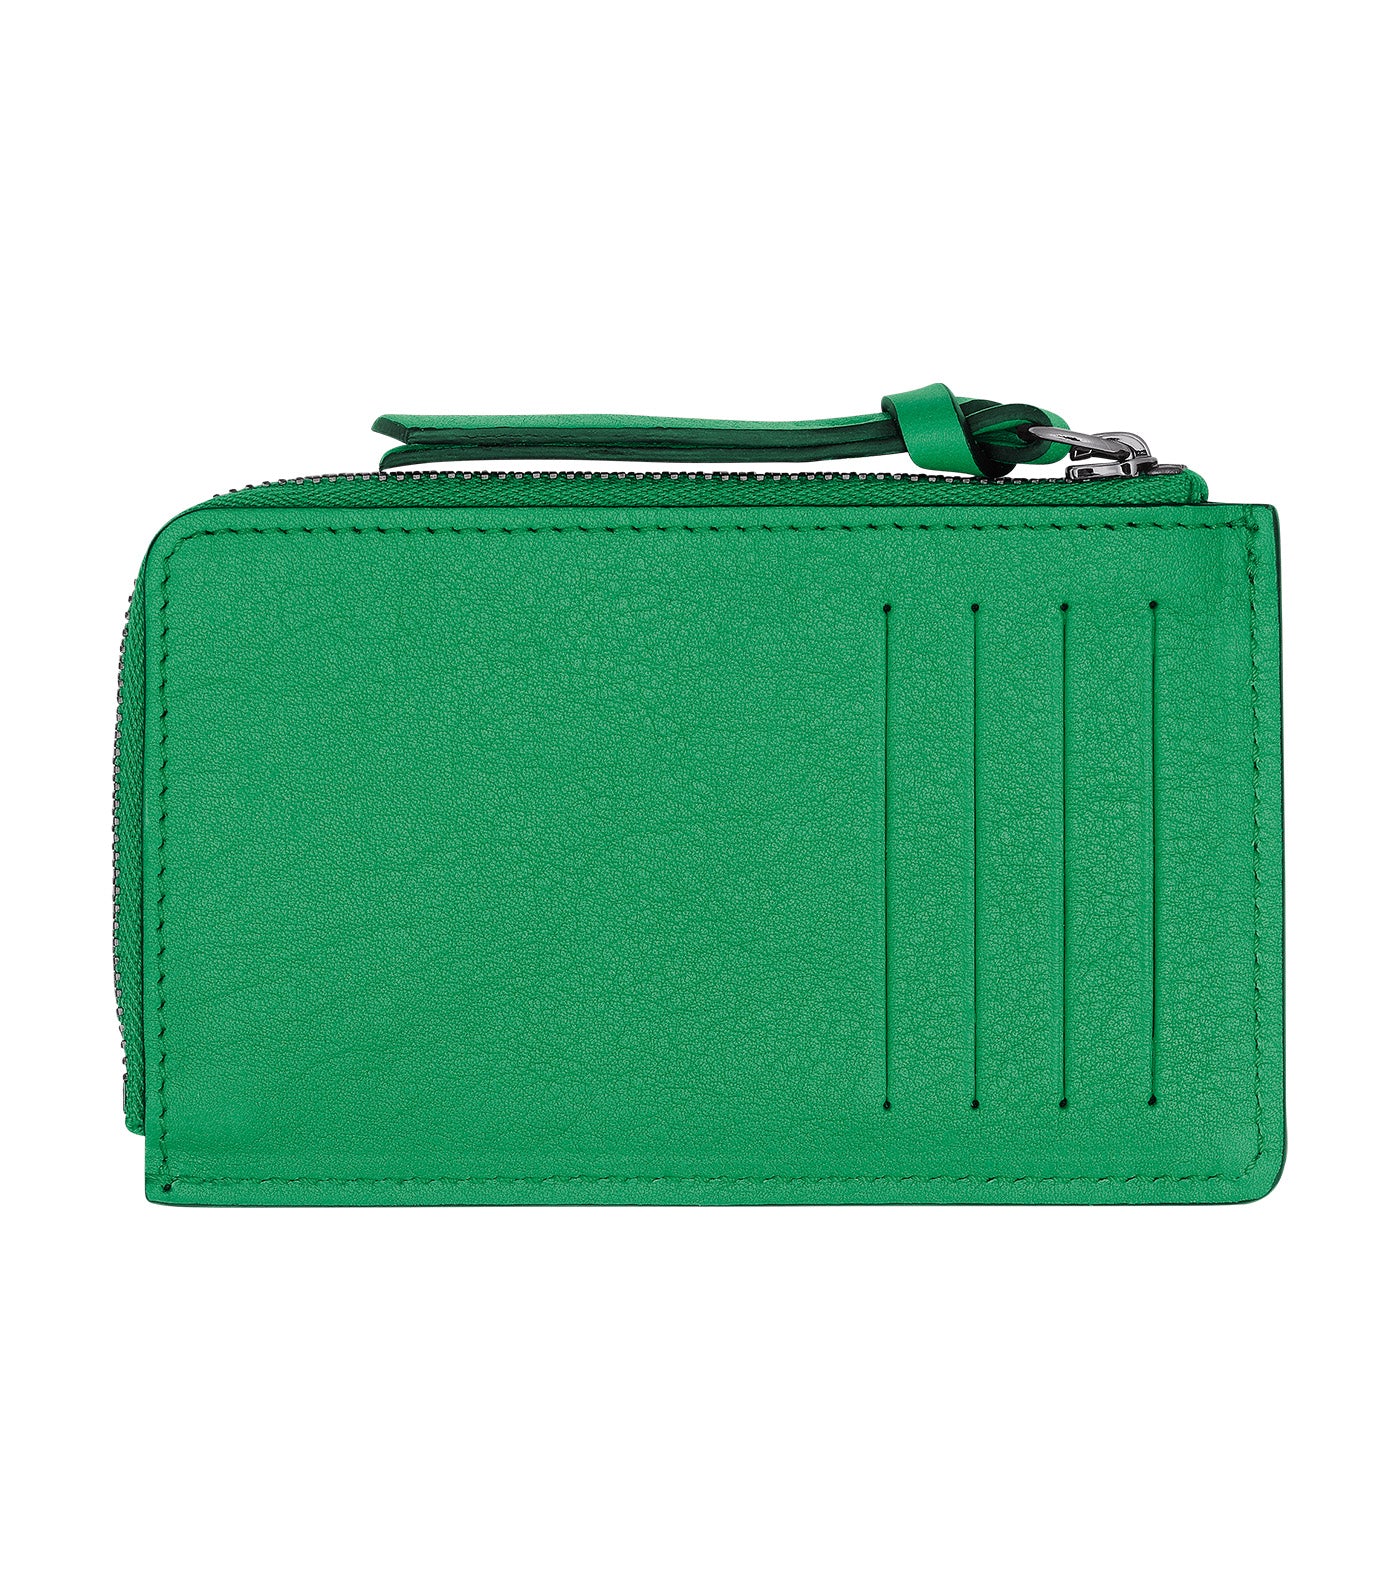 Longchamp 3D Card Holder Green